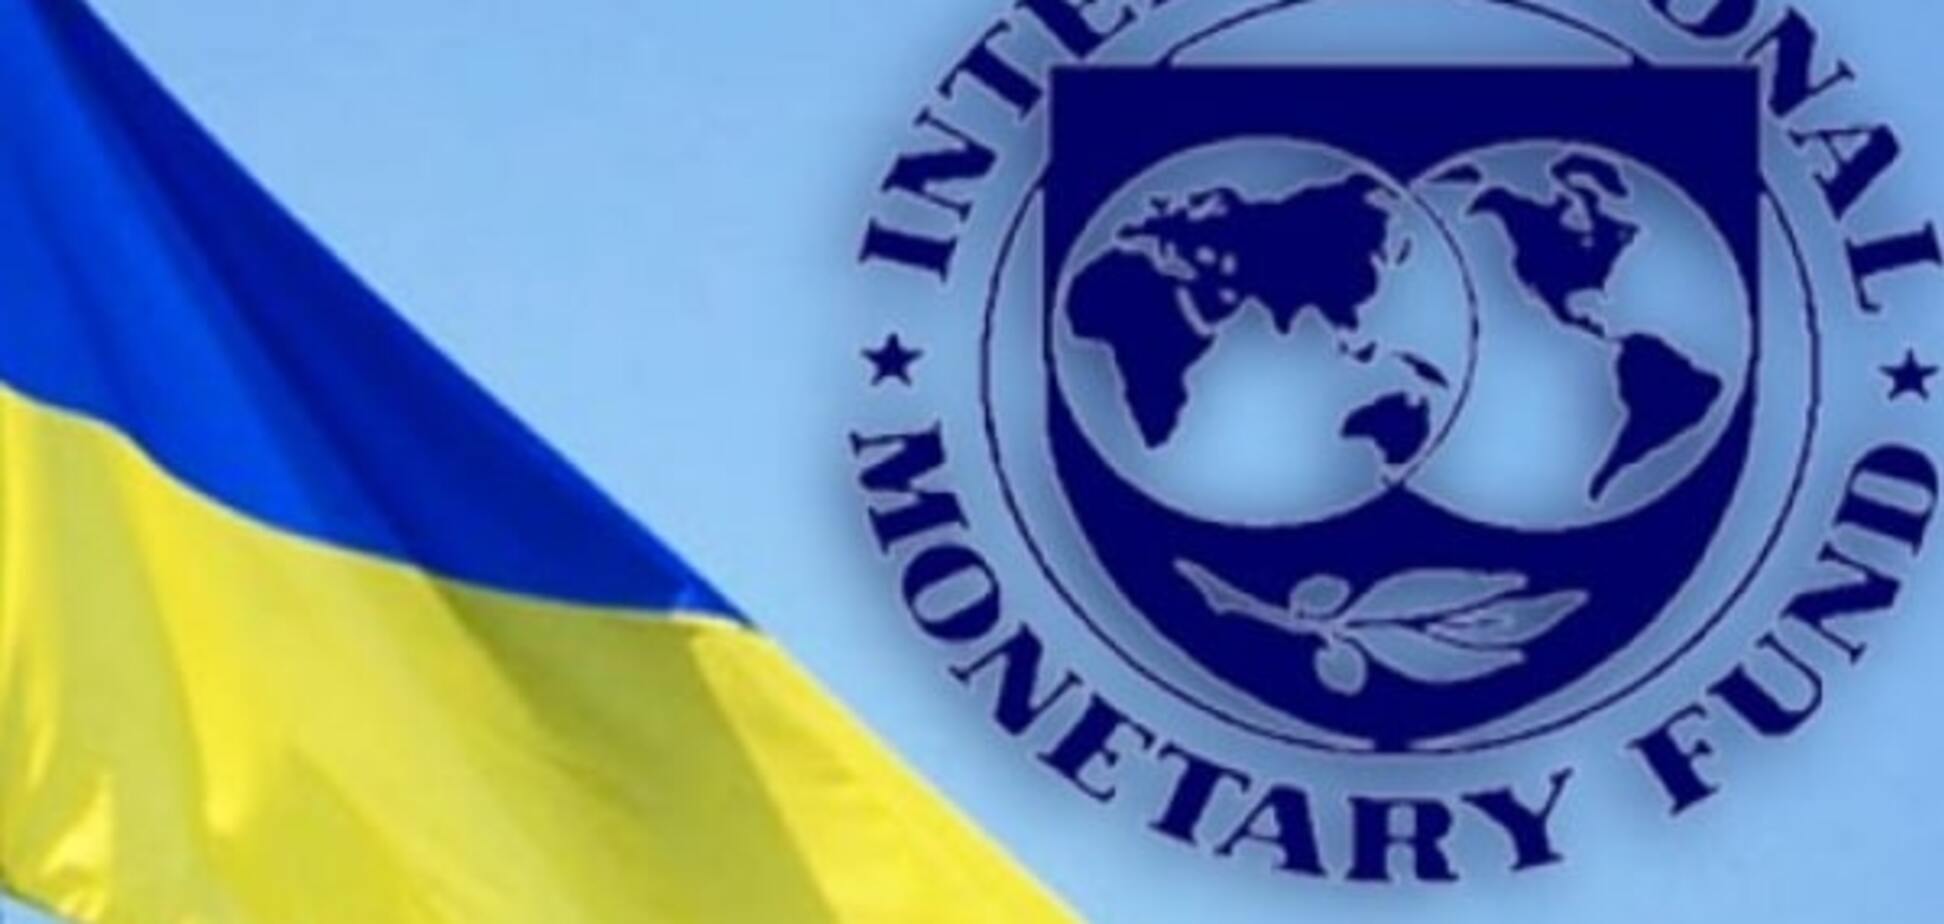 У МВФ появились серьезные претензии к Украине - СМИ